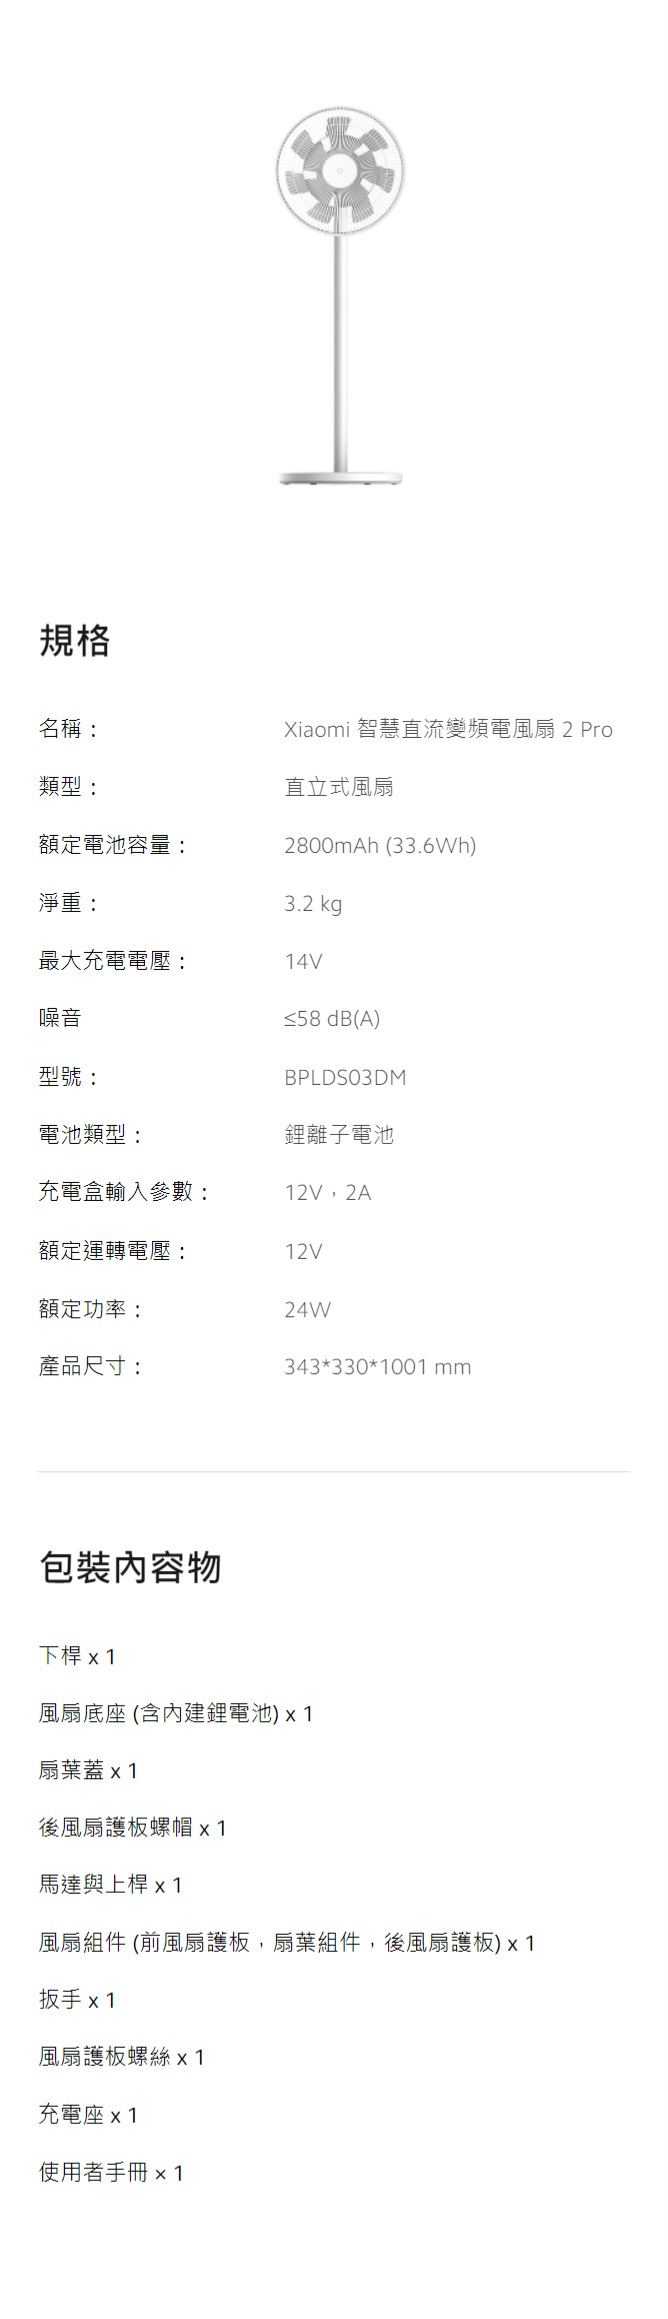 規格名稱:類型:額定電池容量:Xiaomi 智慧直流變頻電風扇2 Pro直立式風扇2800mAh (33.6Wh)3.2 kg最大充電電壓:14V淨重:噪音型號:≤58 dB(A)BPLDSO3DM電池類型:鋰離子電池充電盒輸入參數:12V,2A額定運轉電壓:12V額定功率:24W產品尺寸:343*330*1001 包裝內容物下桿 x 1風扇底座 (內建鋰電池)扇葉蓋後風扇護板螺帽 x1馬達與上桿x1風扇組件 (風扇護板,扇葉組件,後風扇護板)x1扳手 x1風扇護板螺絲 x1充電座x1使用者手冊x1